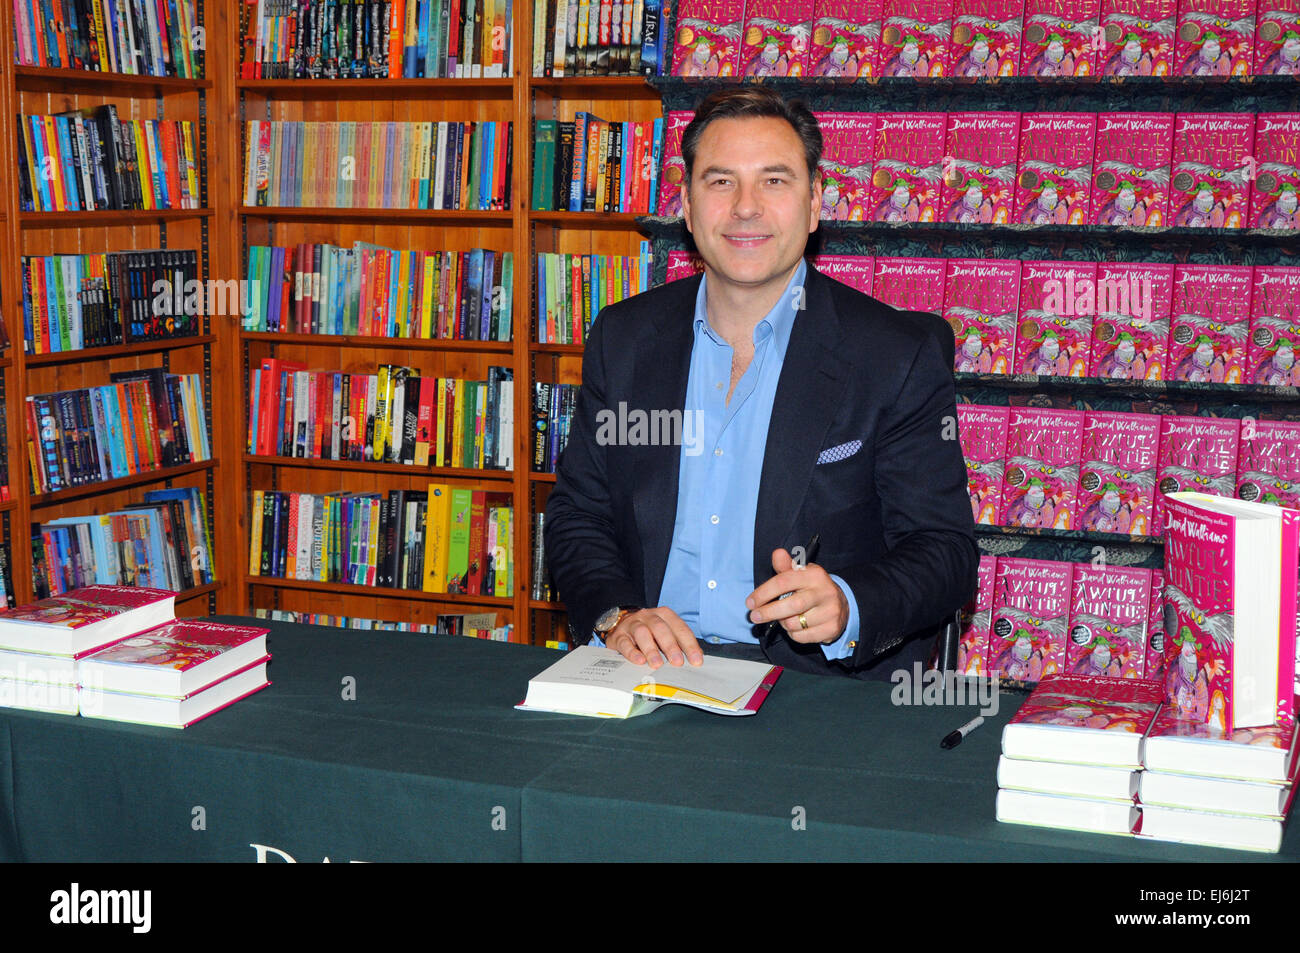 London, UK, 27.09.2014, David Walliams Kopien der schrecklichen Tante am Daunts Bücher über Kings Road, Chelsea unterzeichnet. Stockfoto